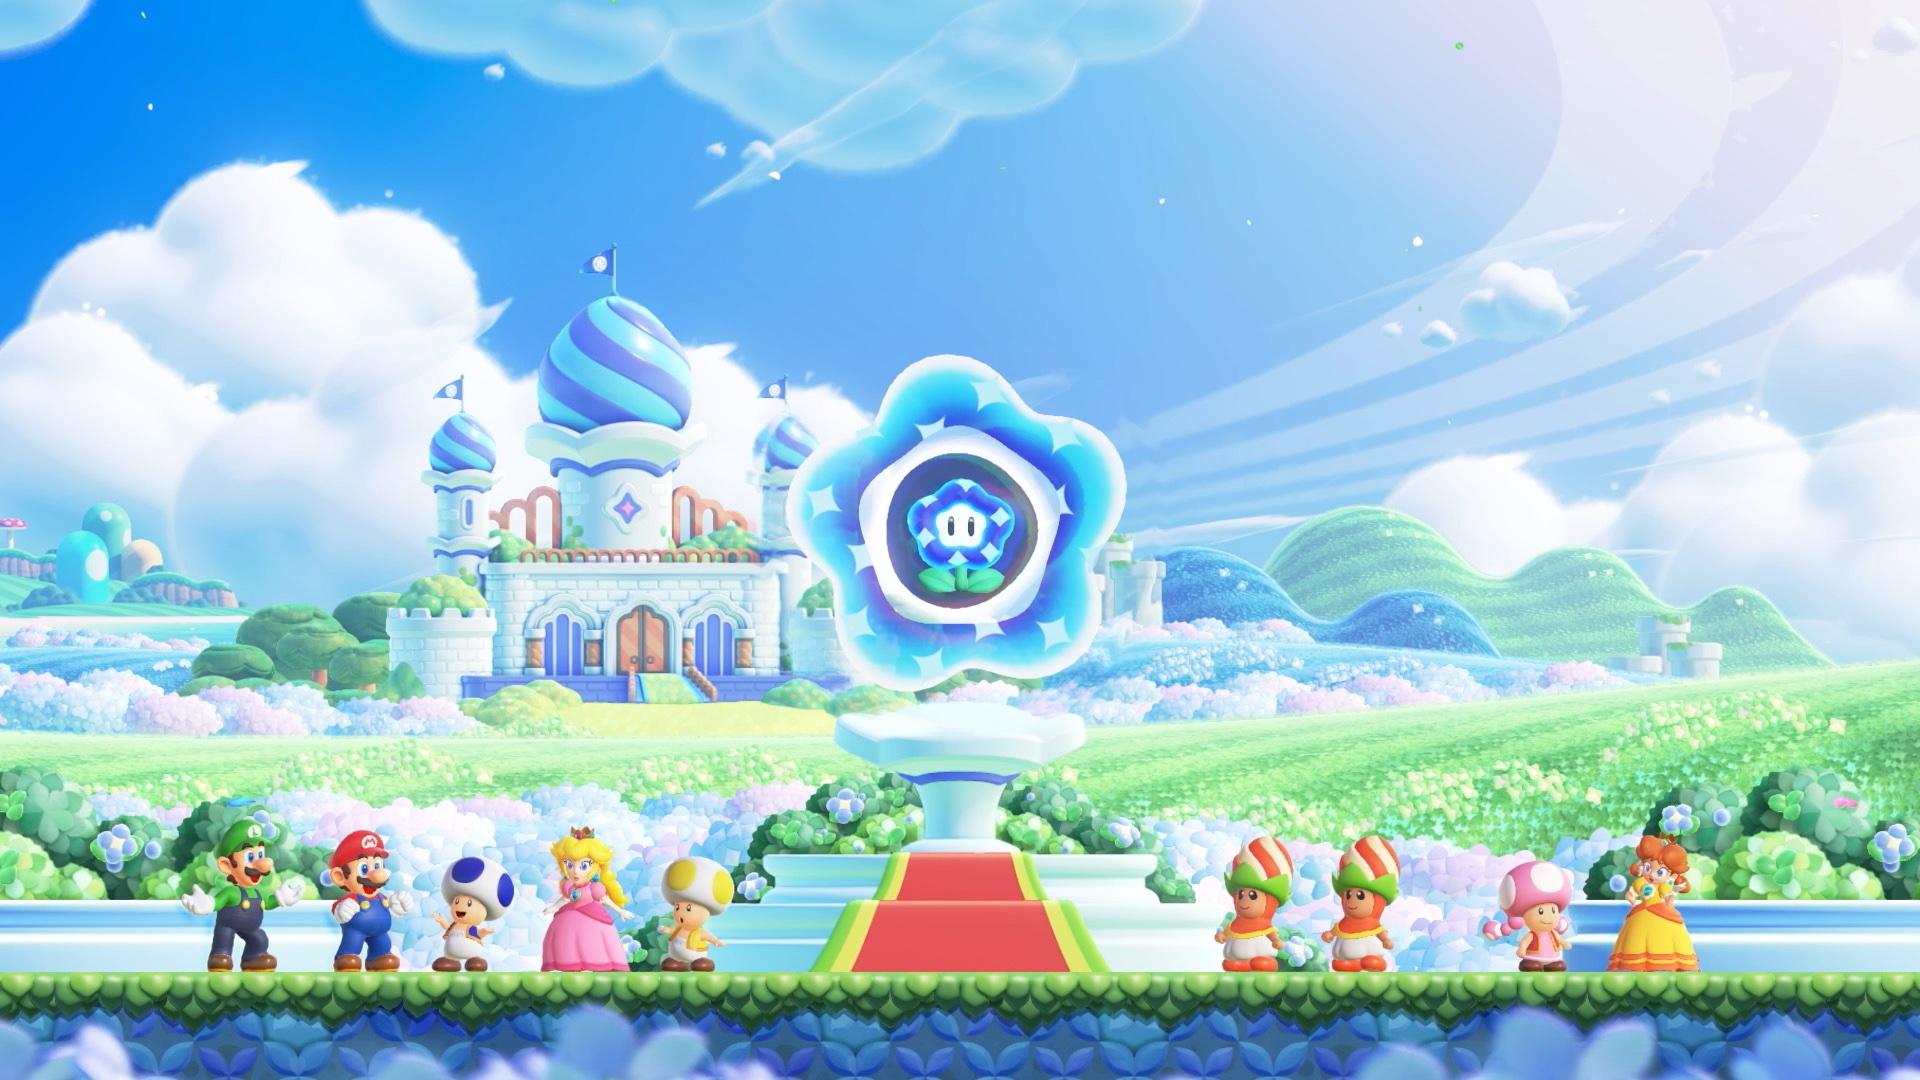 Mario och vänner observerar Wonder Flower i Flower Kingdom i 